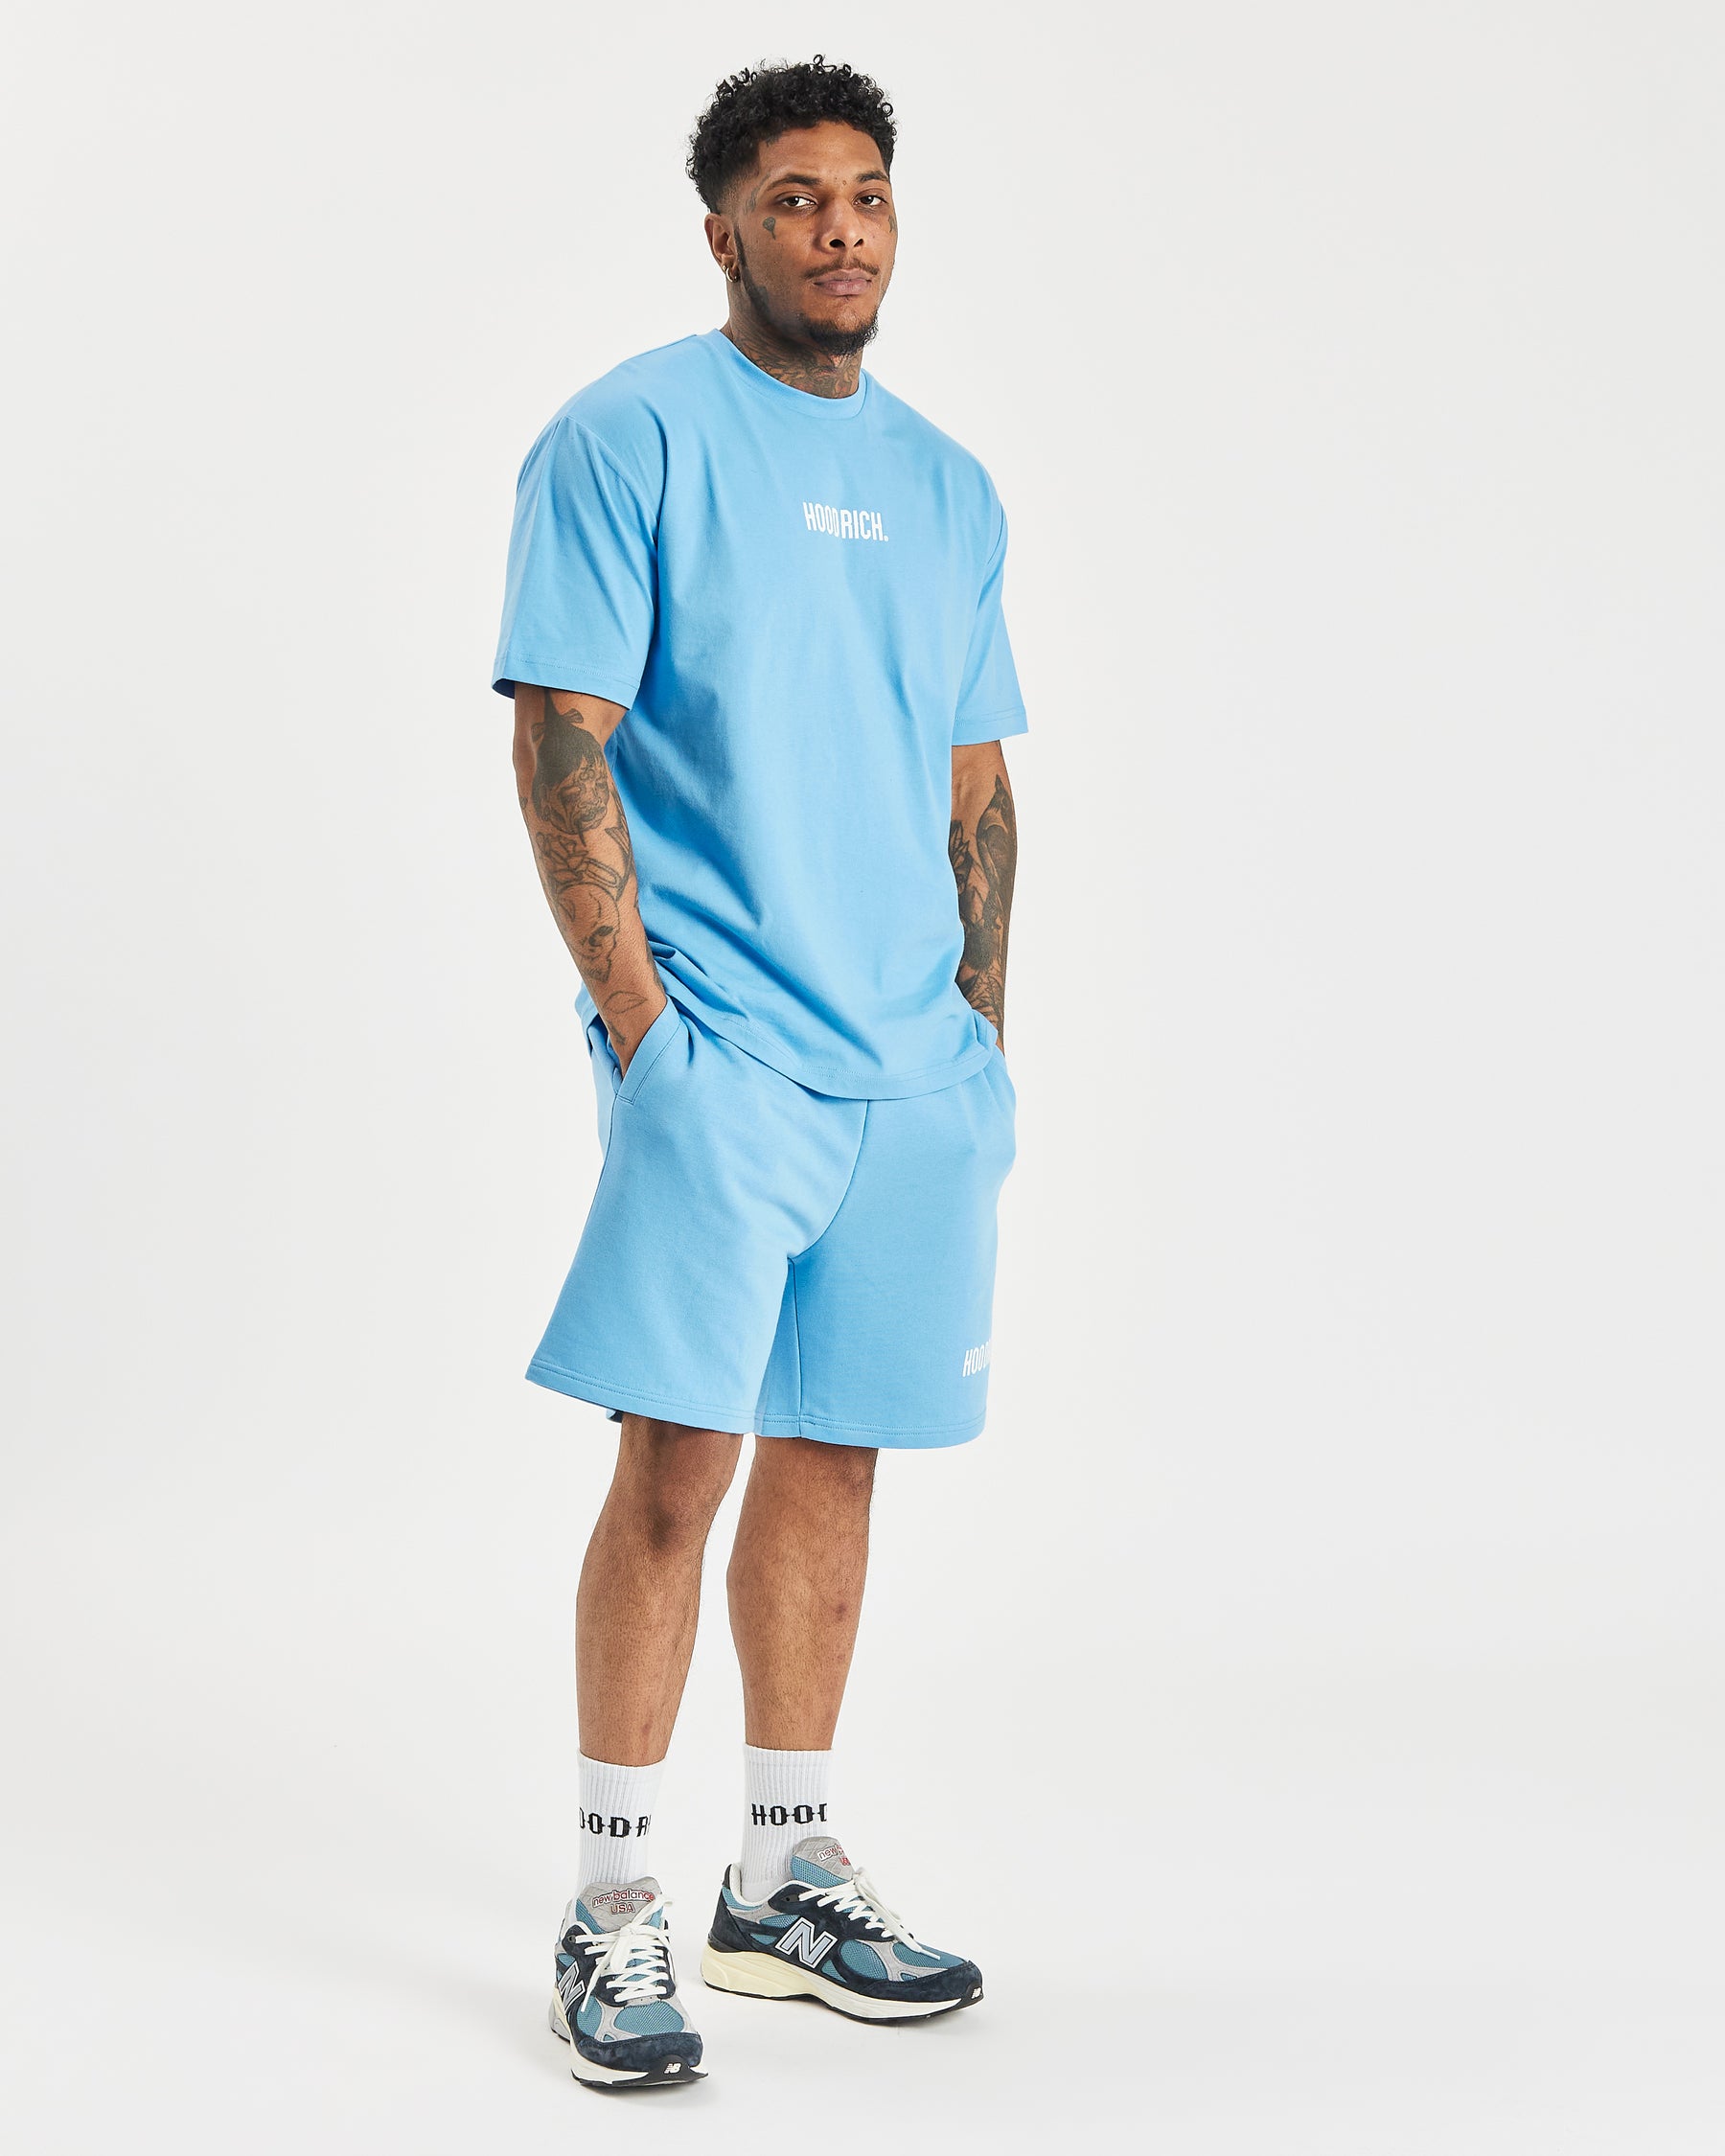 OG Core Small Logo Shorts Set - Azure Blue/White